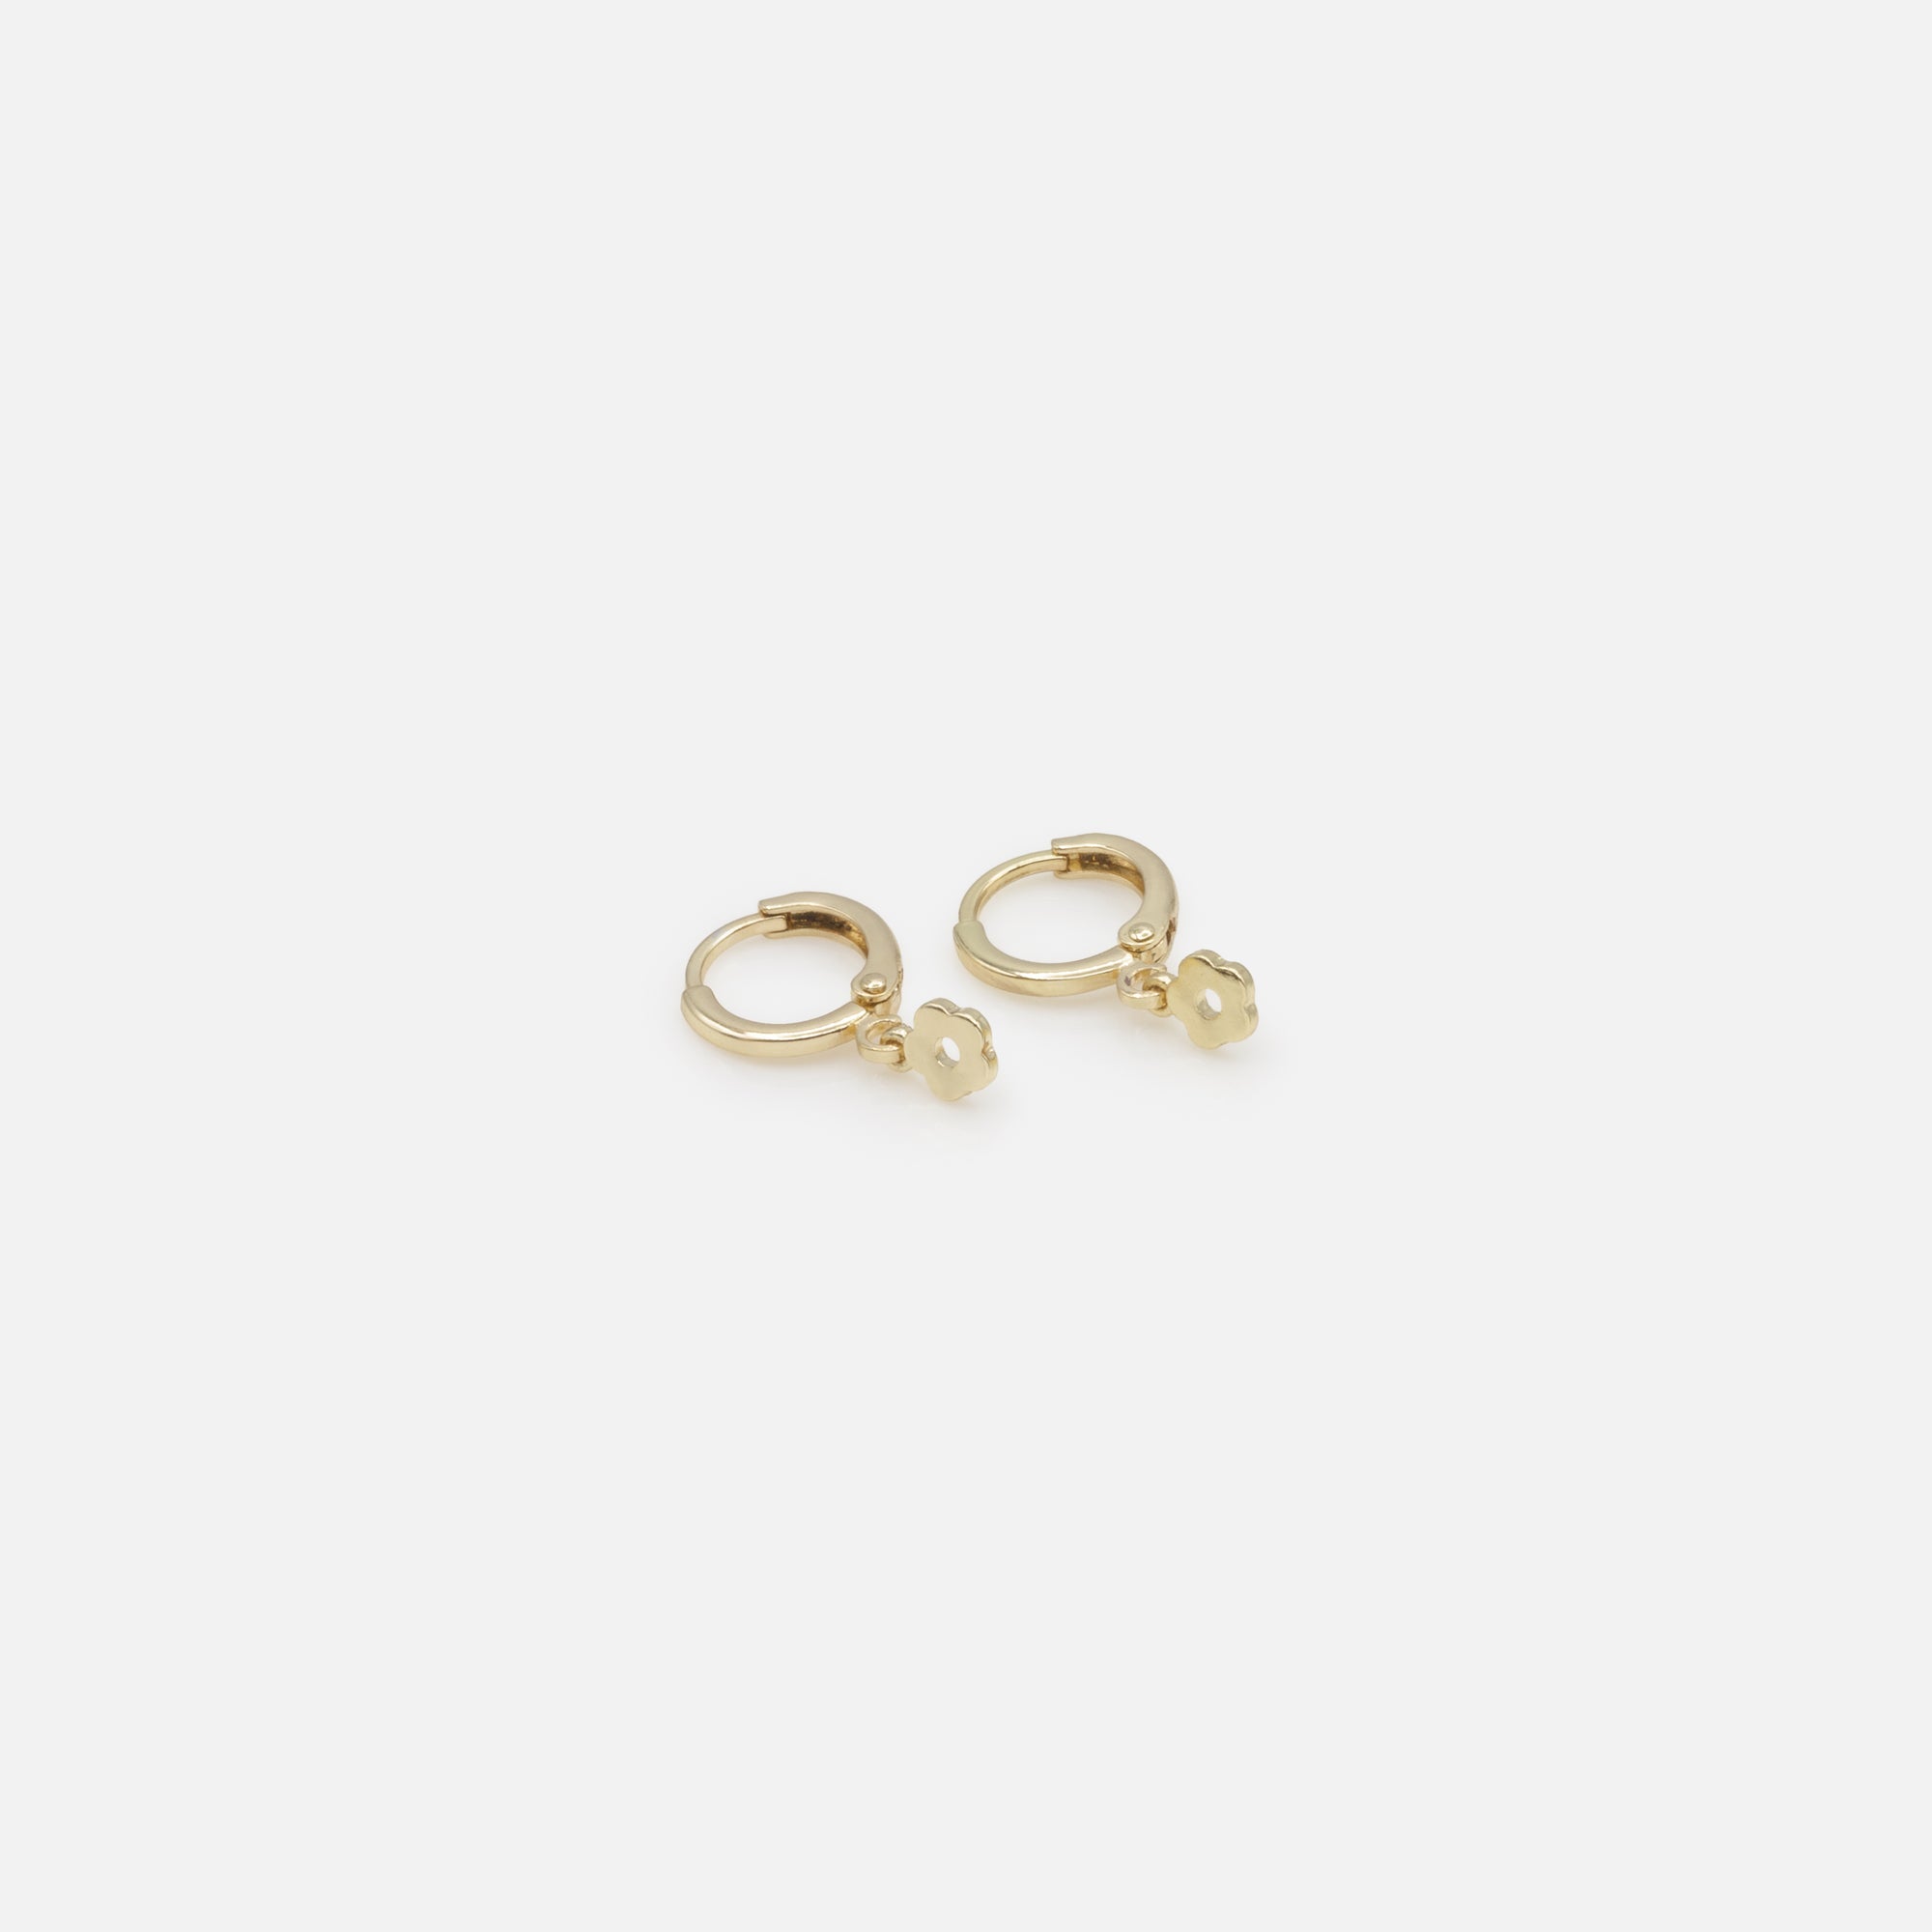 Duo de boucles d'oreilles anneaux dorés simples et breloque fleur